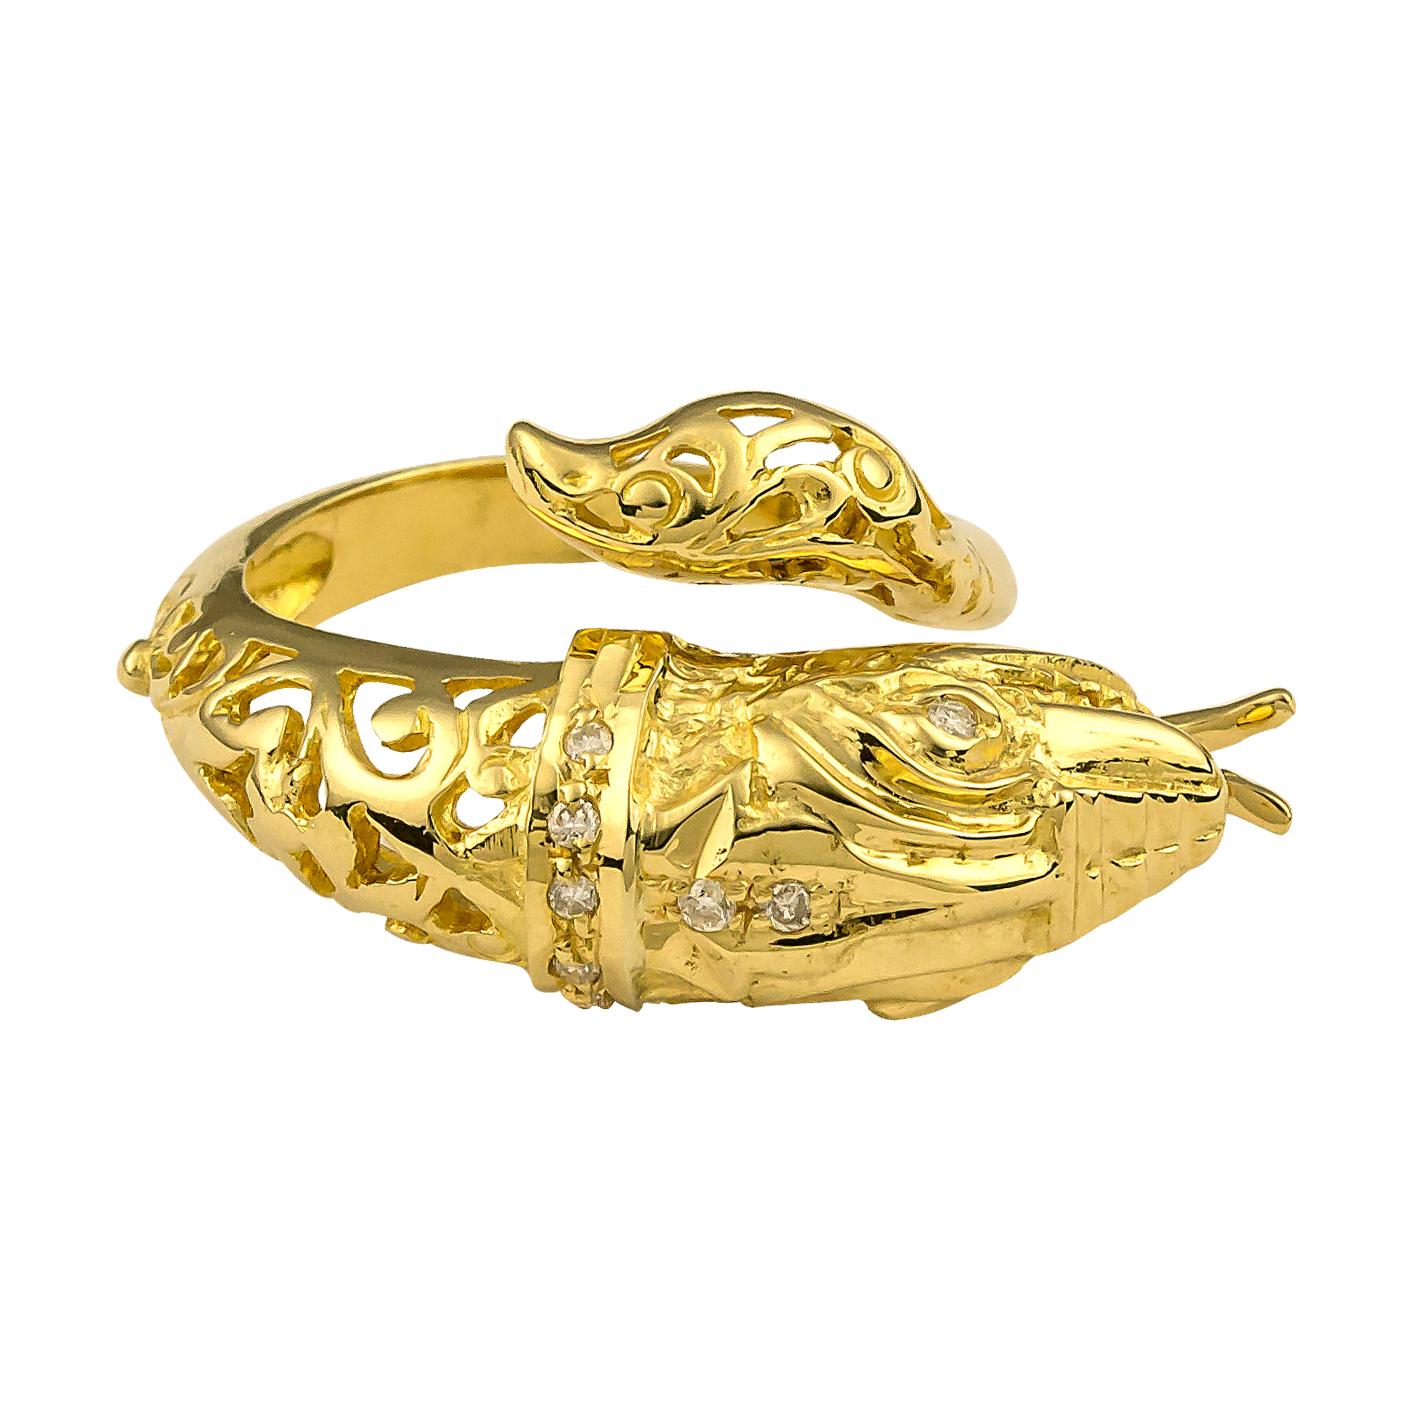 S.Georgios Designer Schlangenring ist handgefertigt aus massivem 18 Karat Gelbgold und ist mikroskopisch verziert mit Granulat Details alle maßgeschneiderte. Dieser einzigartige Ring zeigt einen Schlangenkopf mit Diamanten als Augen, inspiriert vom